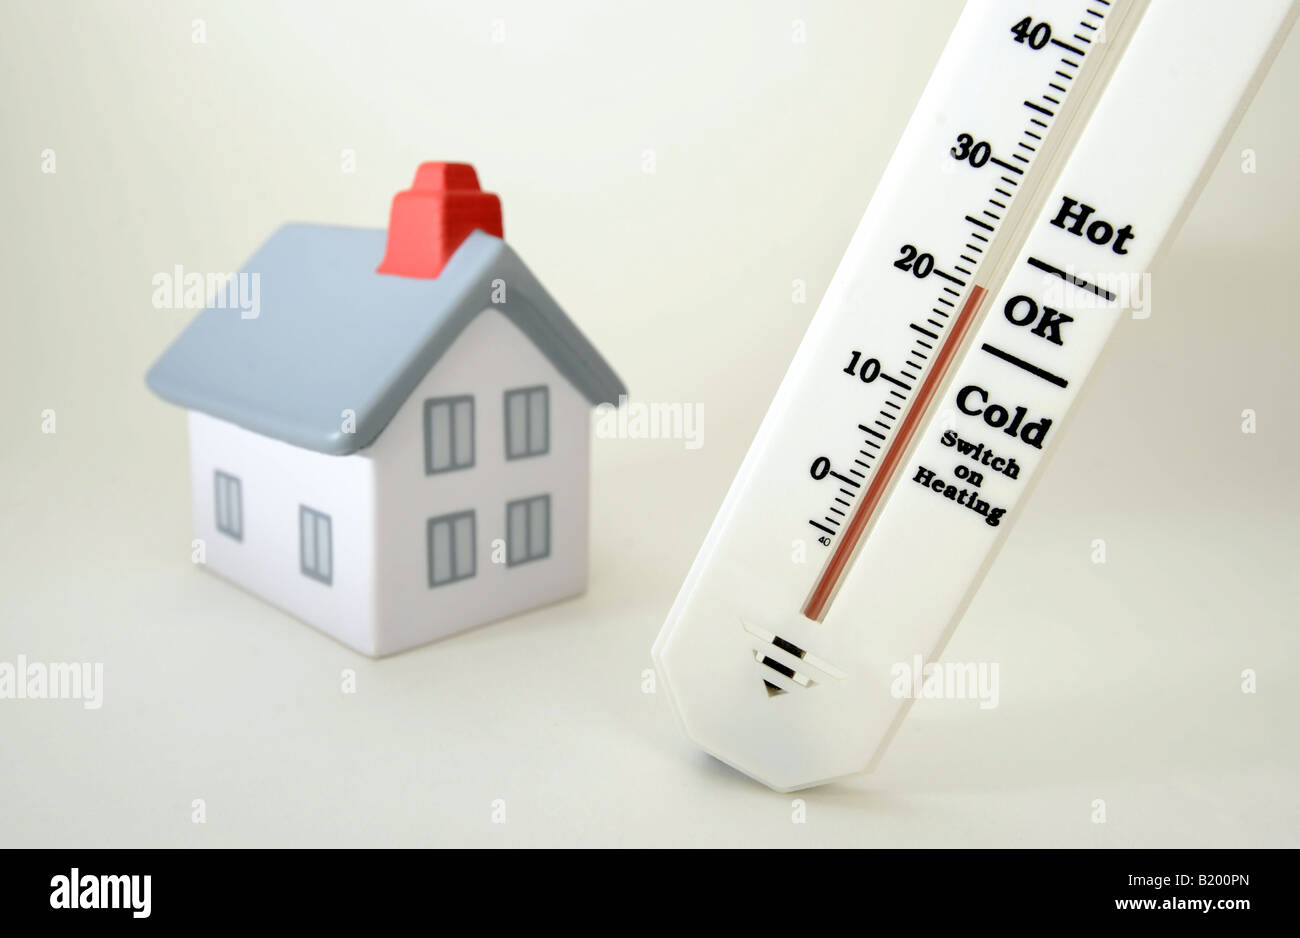 Chambre avec le thermomètre indiquant 20 degrés Celcius, température ambiante RE LES COÛTS DE CHAUFFAGE ISOLEMENT CHANGEMENT CLIMATIQUE,UK,BRITISH. Banque D'Images